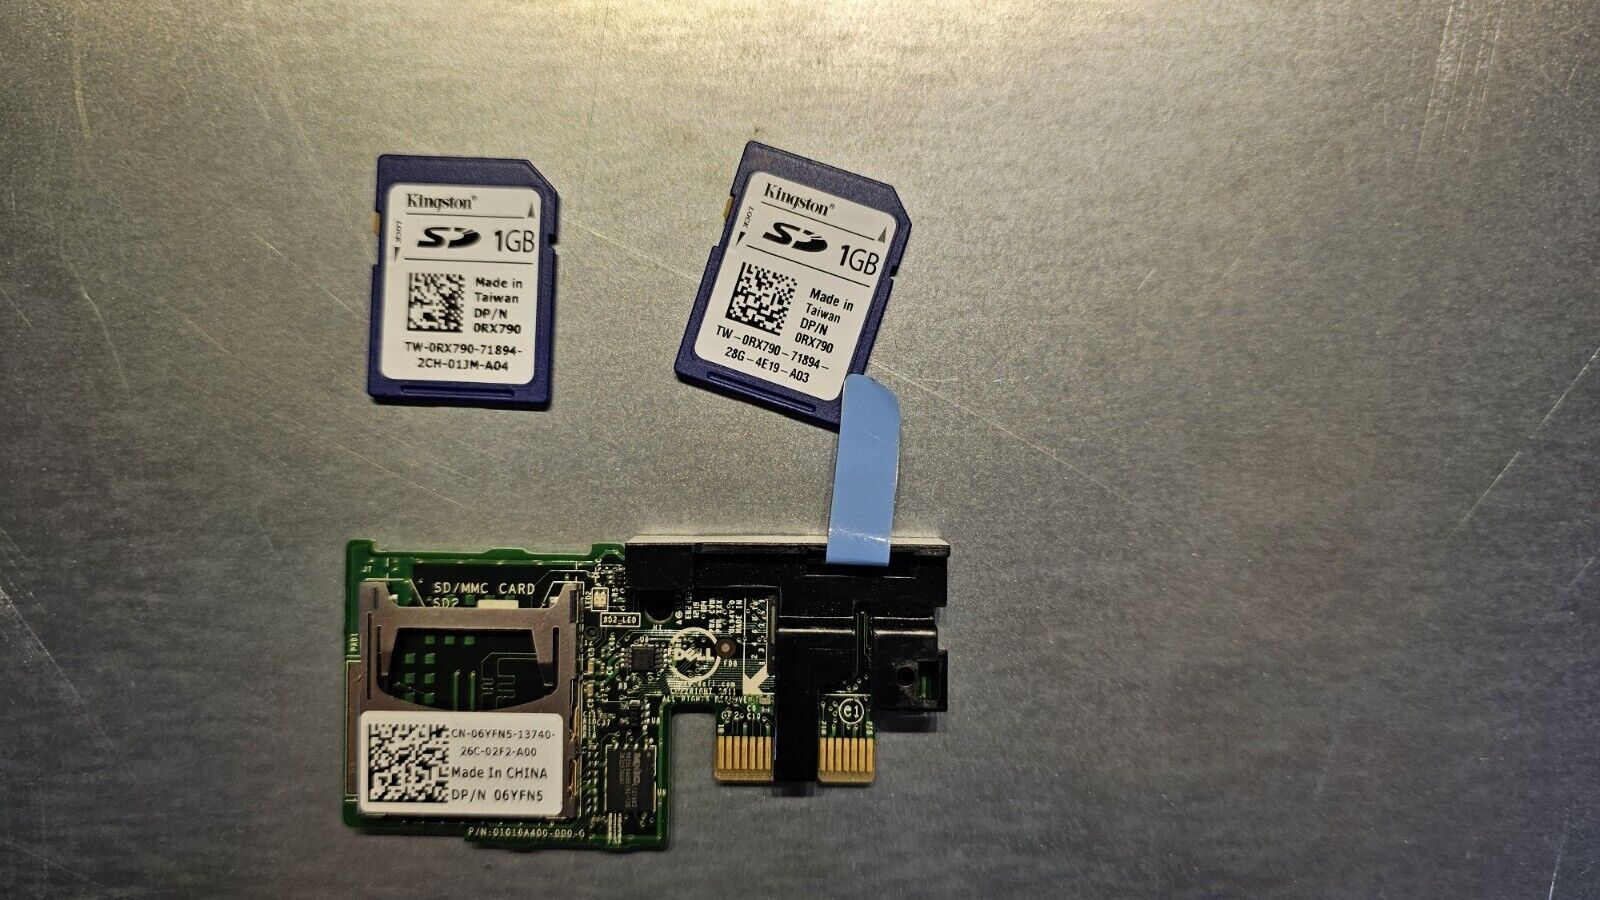 Dell PowerEdge Dual SD Card Reader Module w/ 2x1Gb SD Cards - PN 06YFN5 / 6YFN5